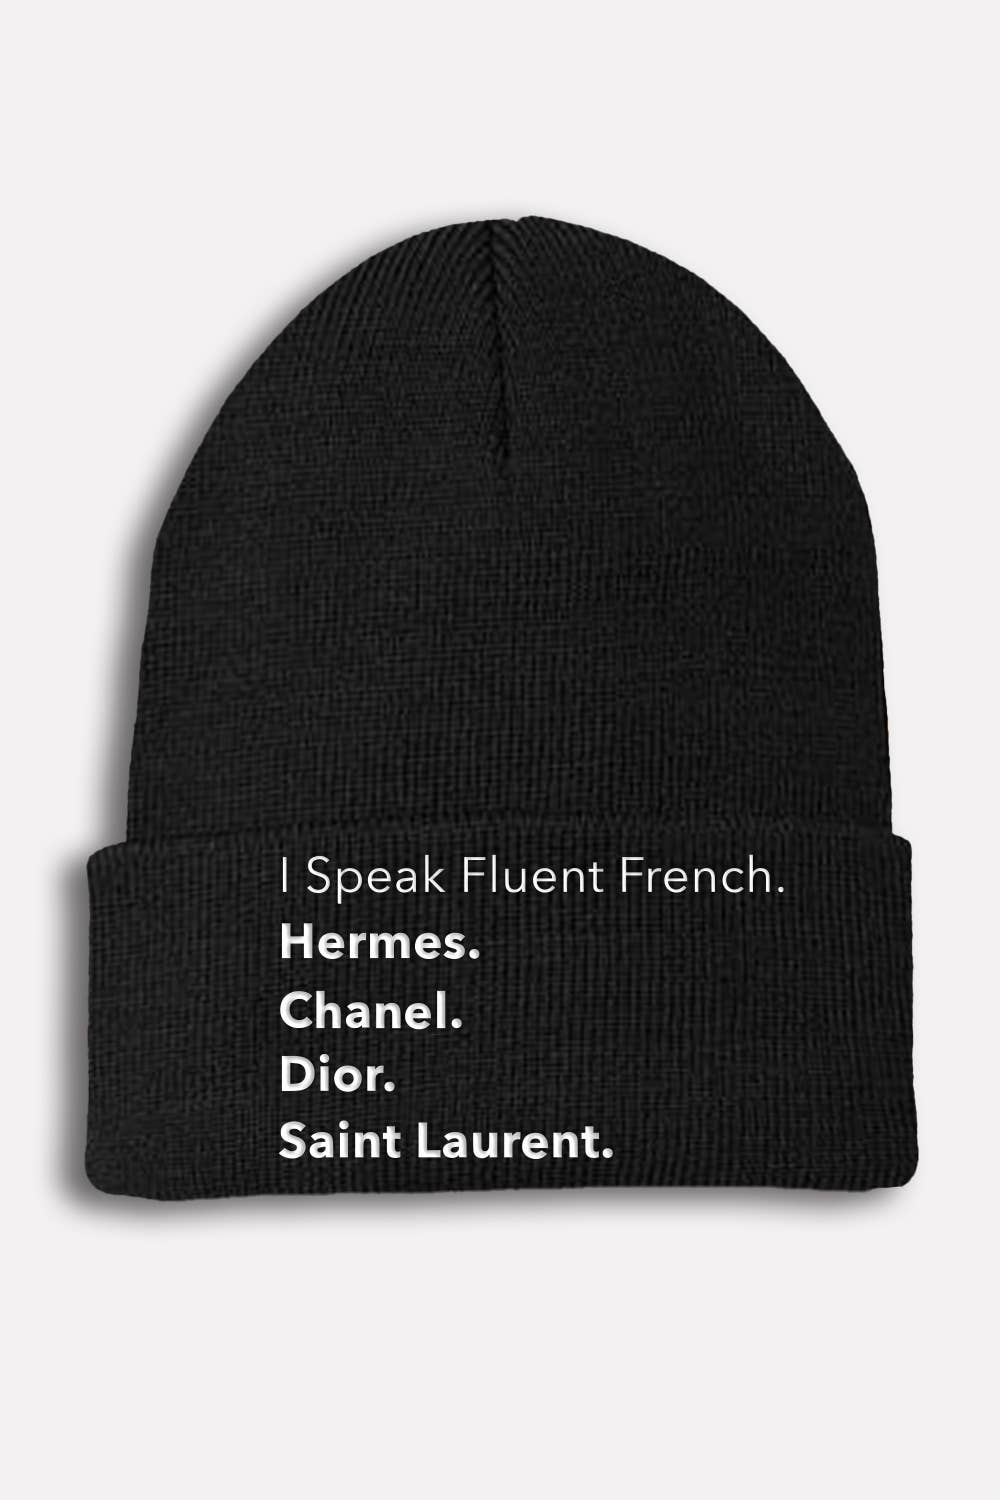 BEANIE - Fluent French (Black)